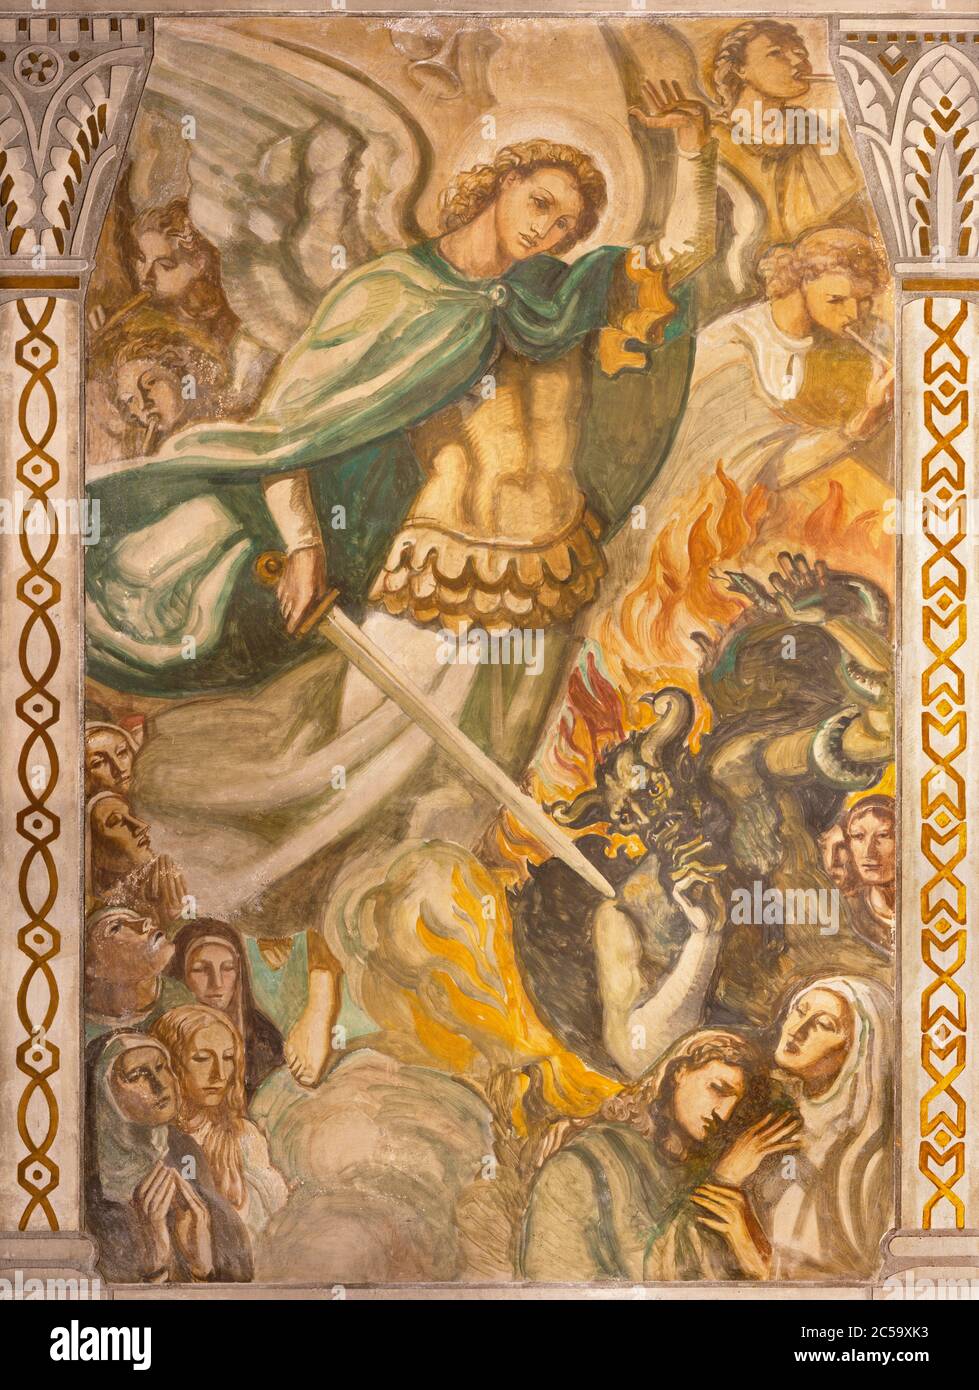 BARCELLONA, SPAGNA - 3 MARZO 2020: L'affresco di Gesù tra i dolori nella chiesa Parroquia Santa Teresa de l'Infant Gesù di Francisco Labarta. Foto Stock